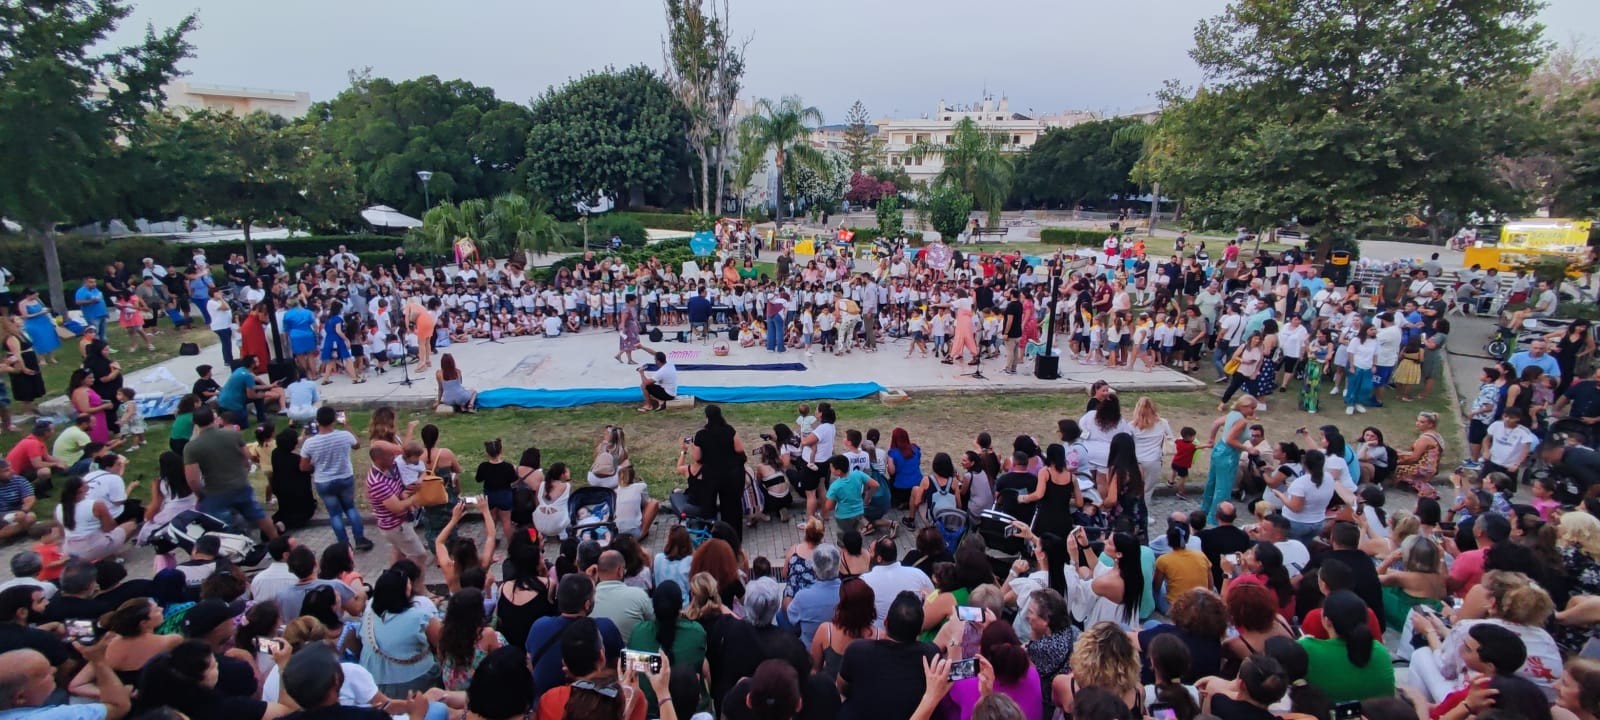 Περισσότερα από 300 παιδιά των νηπιαγωγείων του Δήμου Χανίων ένωσαν τις φωνές τους τραγουδώντας μελωδίες του Μίκη Θεοδωράκη